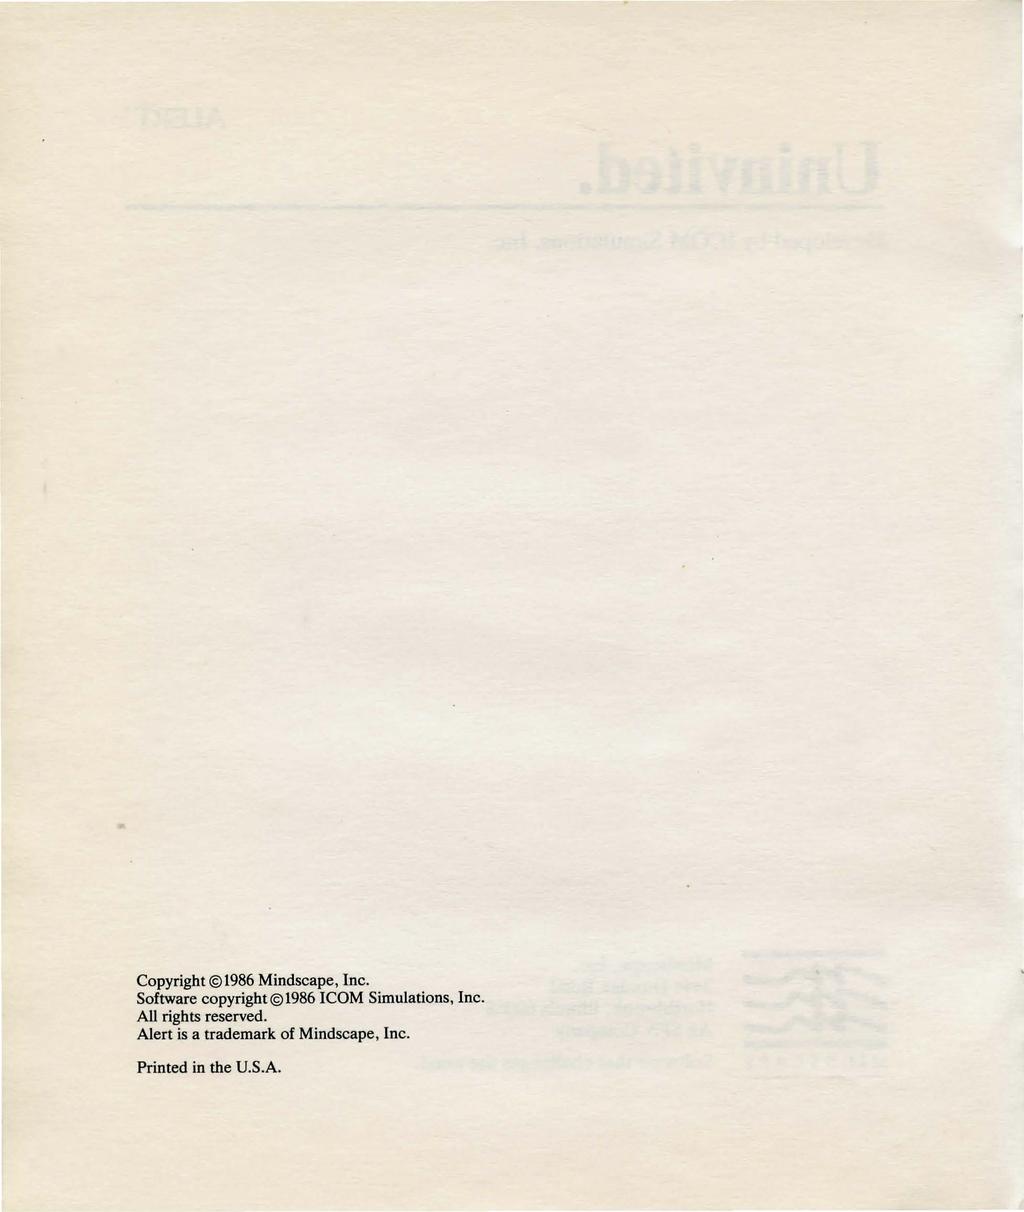 Copyright 1986 Mindscape, Inc. Software copyright 1986!COM Simulations, Inc.